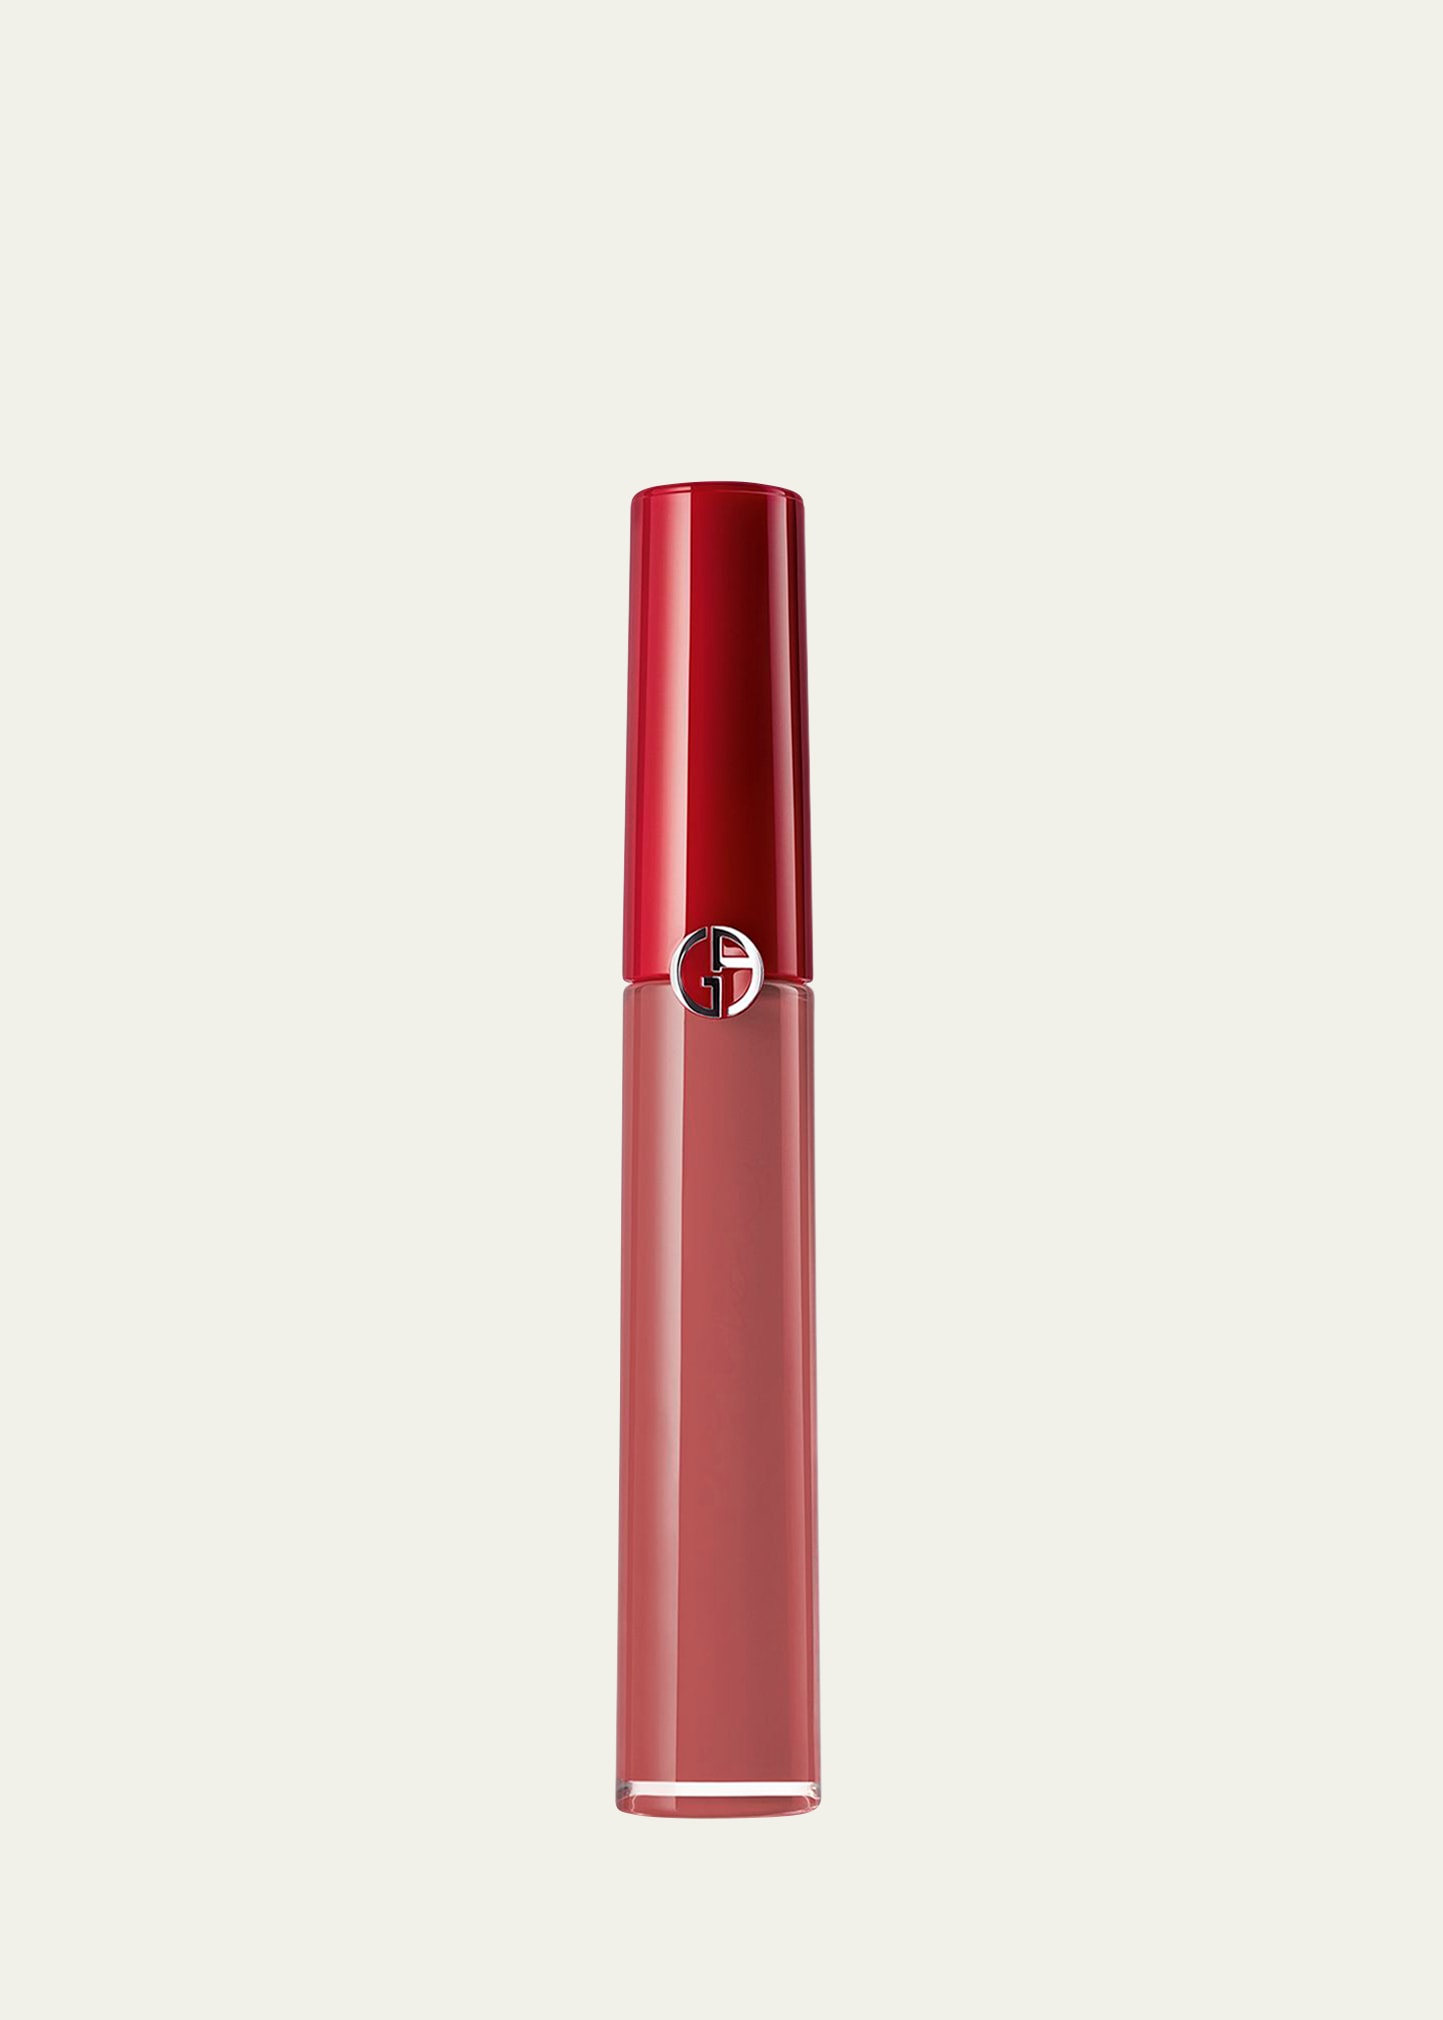 Armani Beauty Lip Maestro Liquid Lipstick In 500 Blush